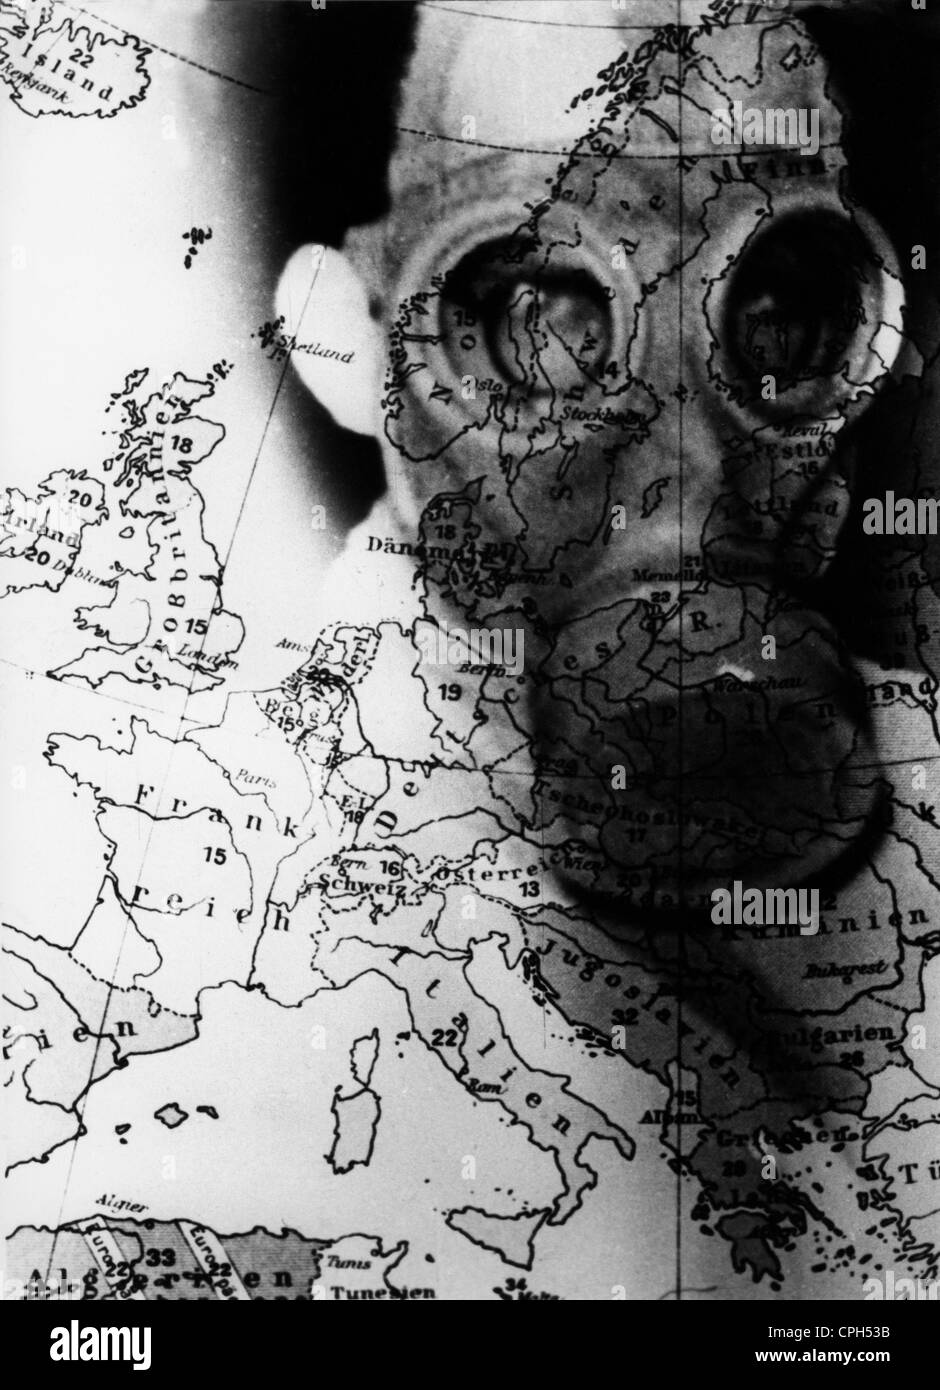 Nazisme / National socialisme, propagande, homme avec masque à gaz, sur une carte de l'Europe, affiche, origine inconnue, années 1930, droits additionnels-Clearences-non disponible Banque D'Images